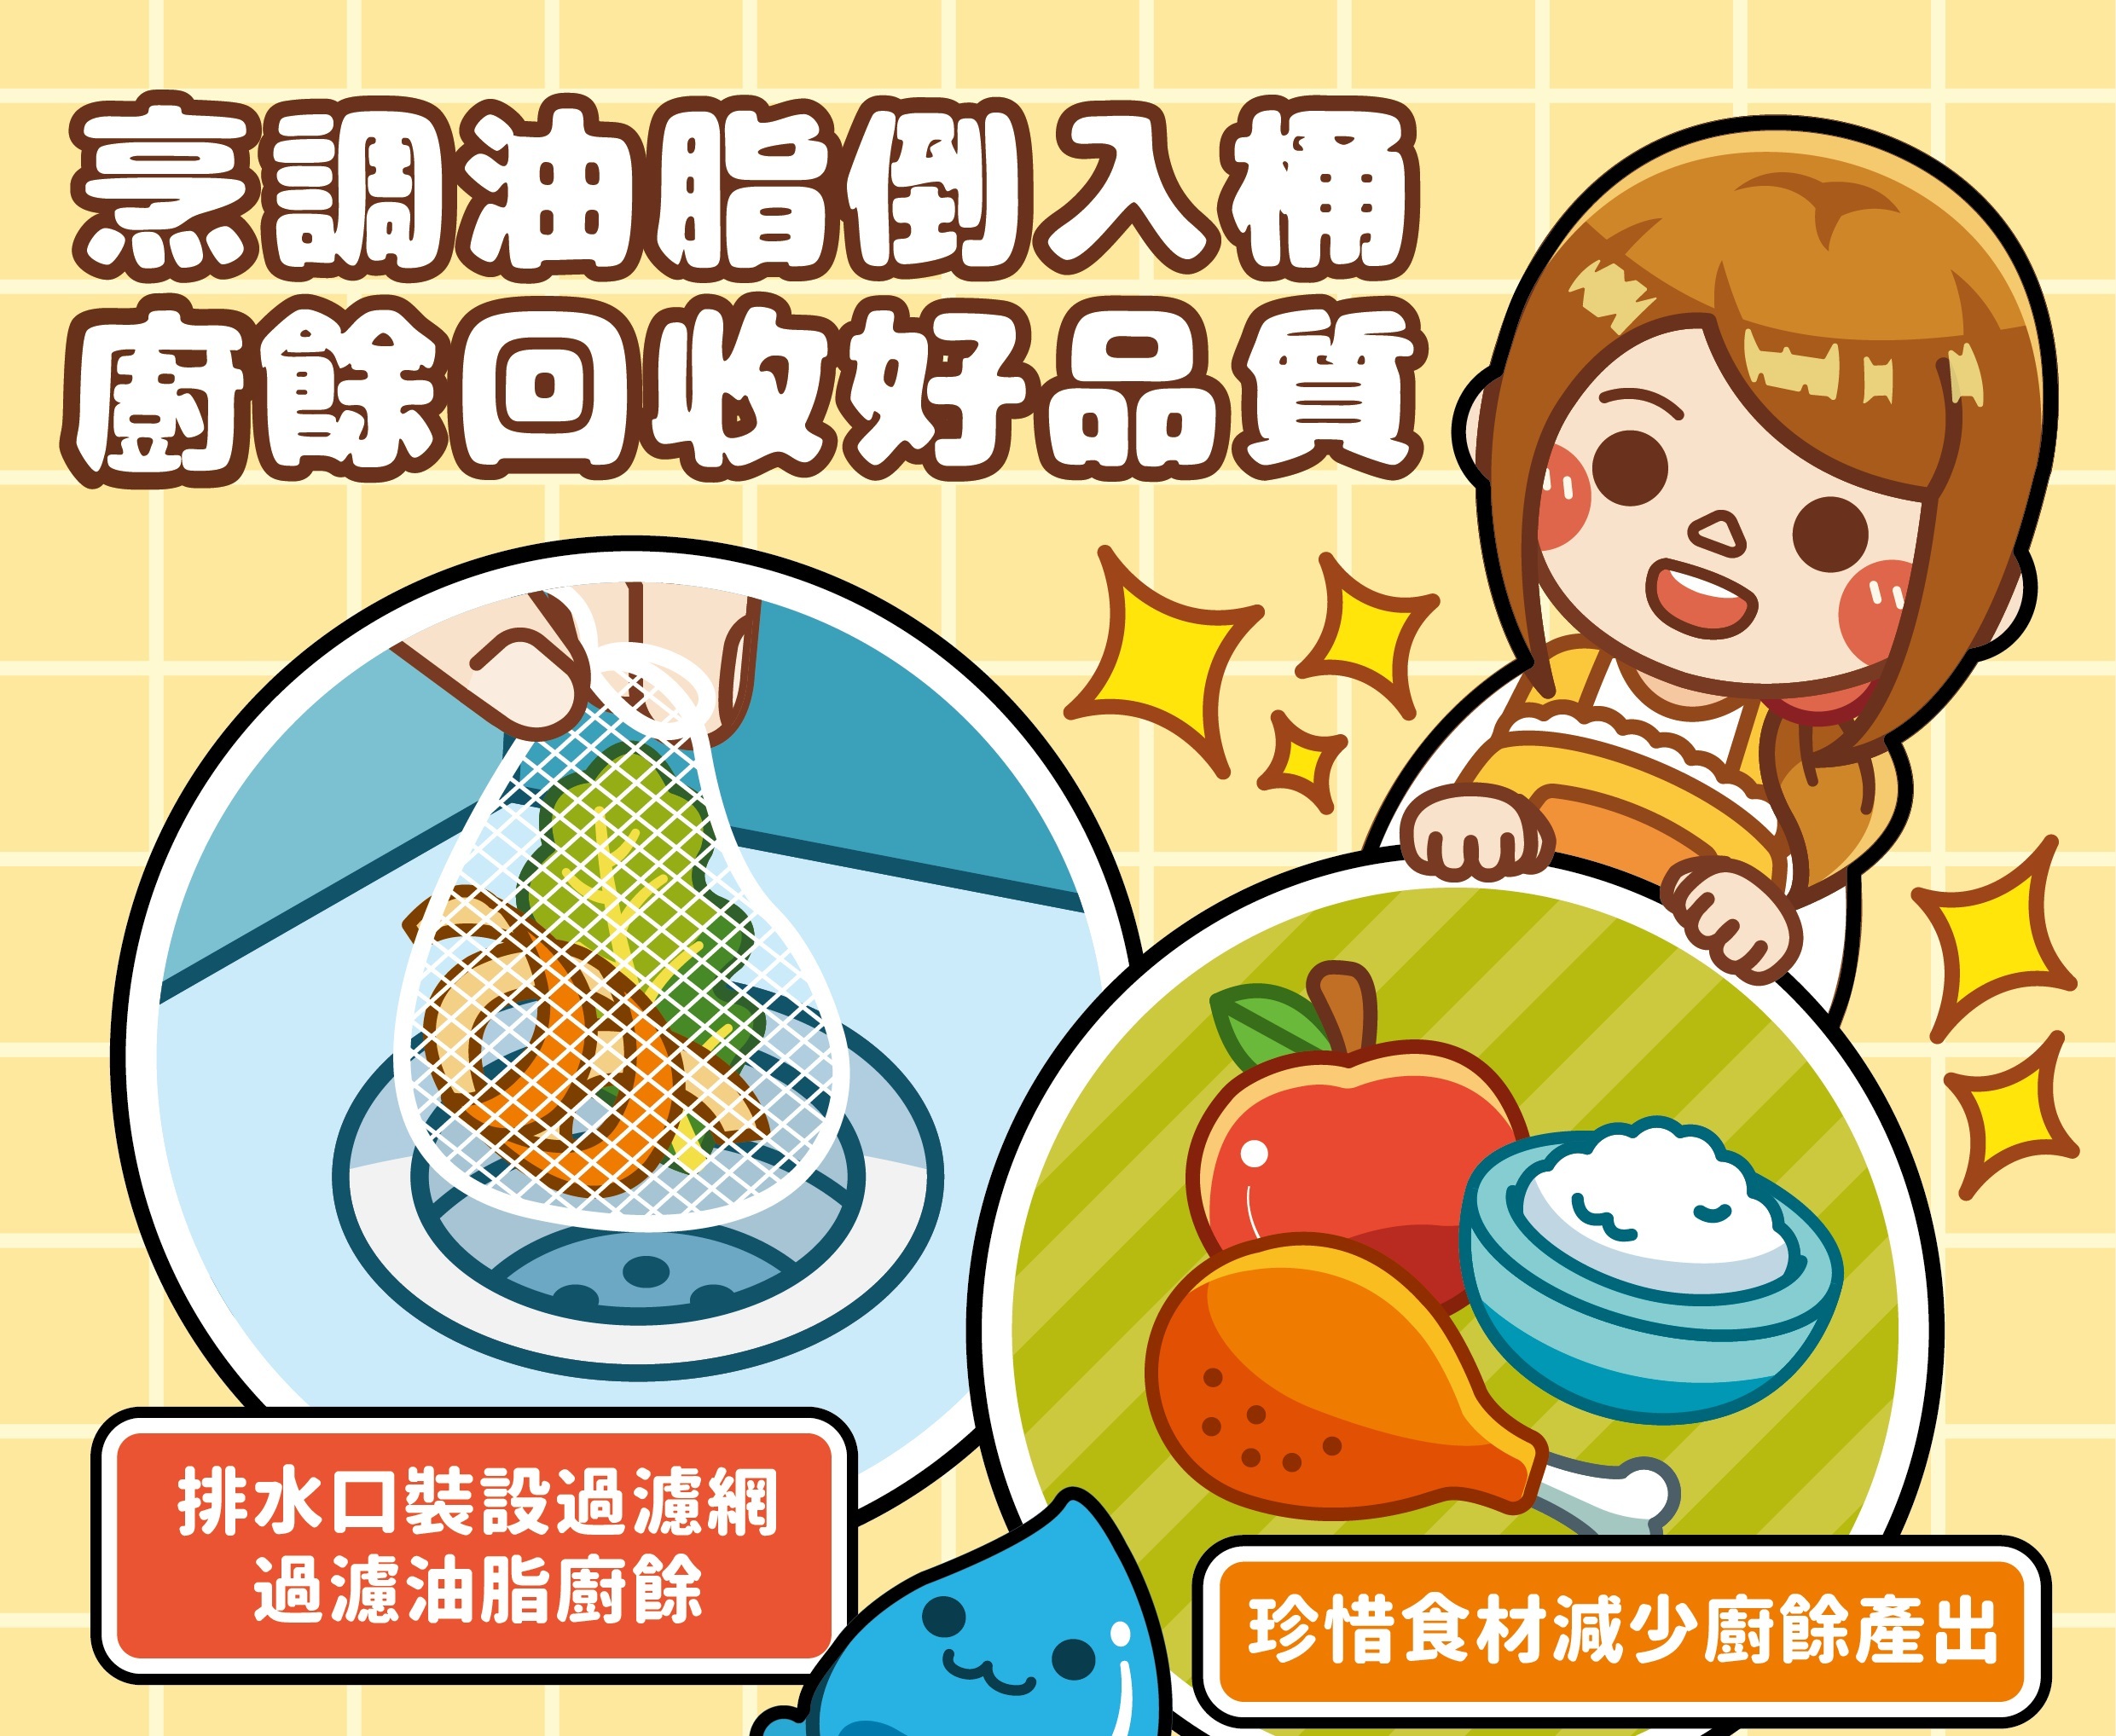 臺北市環保局提醒民眾家中烹調油脂倒入桶，做好廚餘回收，打造美好生活